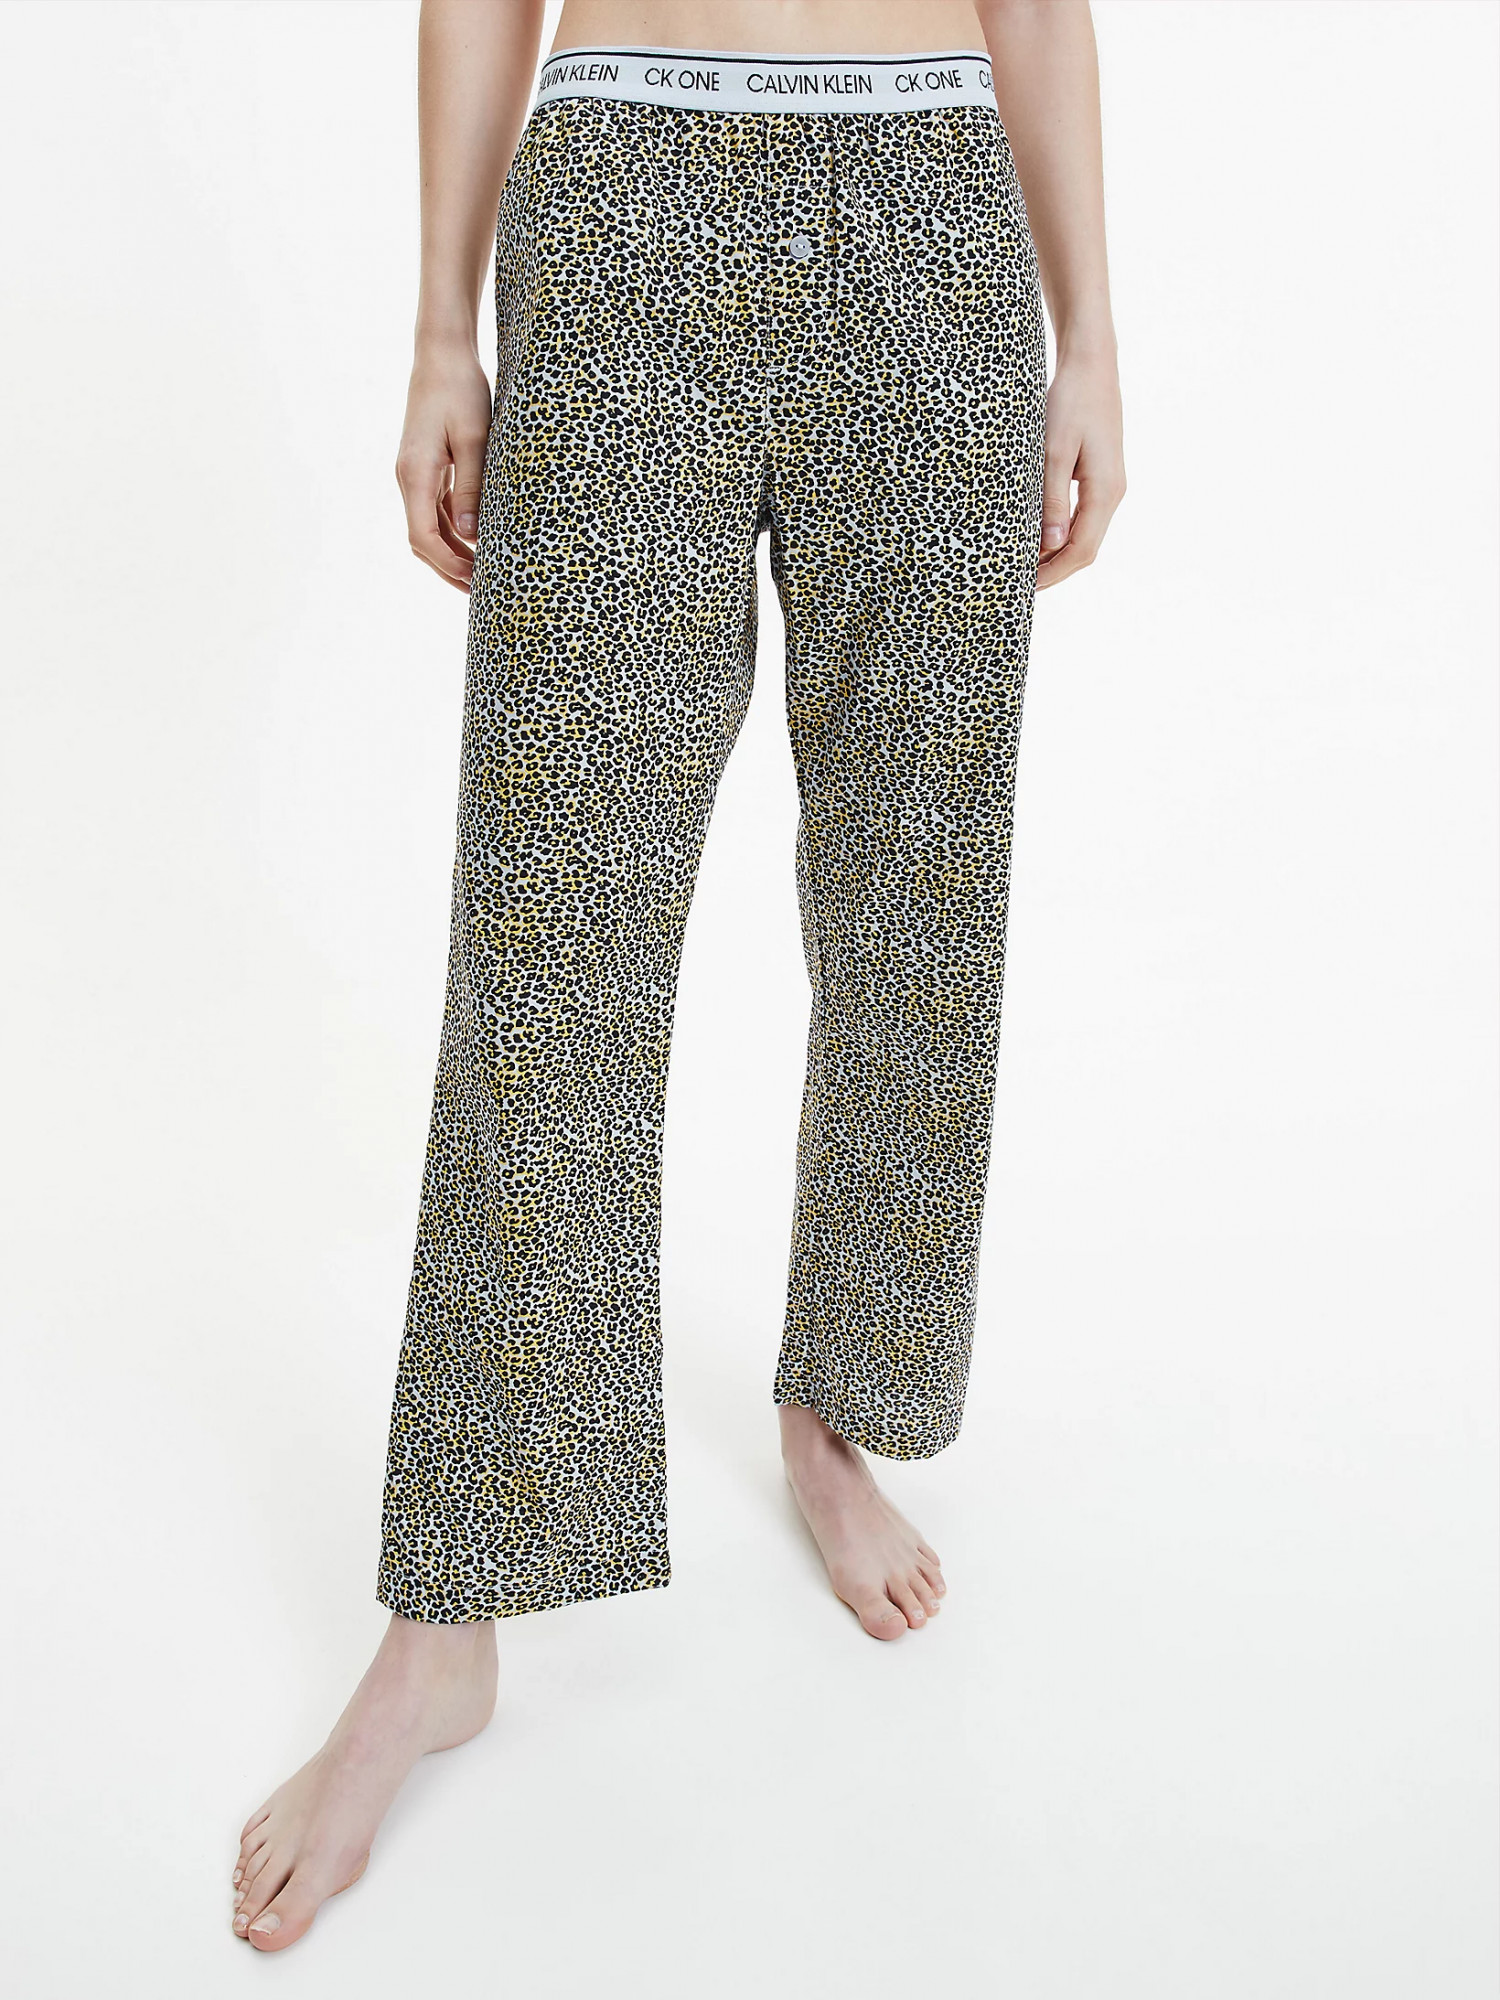 Dámské pyžamové kalhoty QS6433E - V4L Fialová se zvířecím vzorem - Calvin Klein fialová vzor M